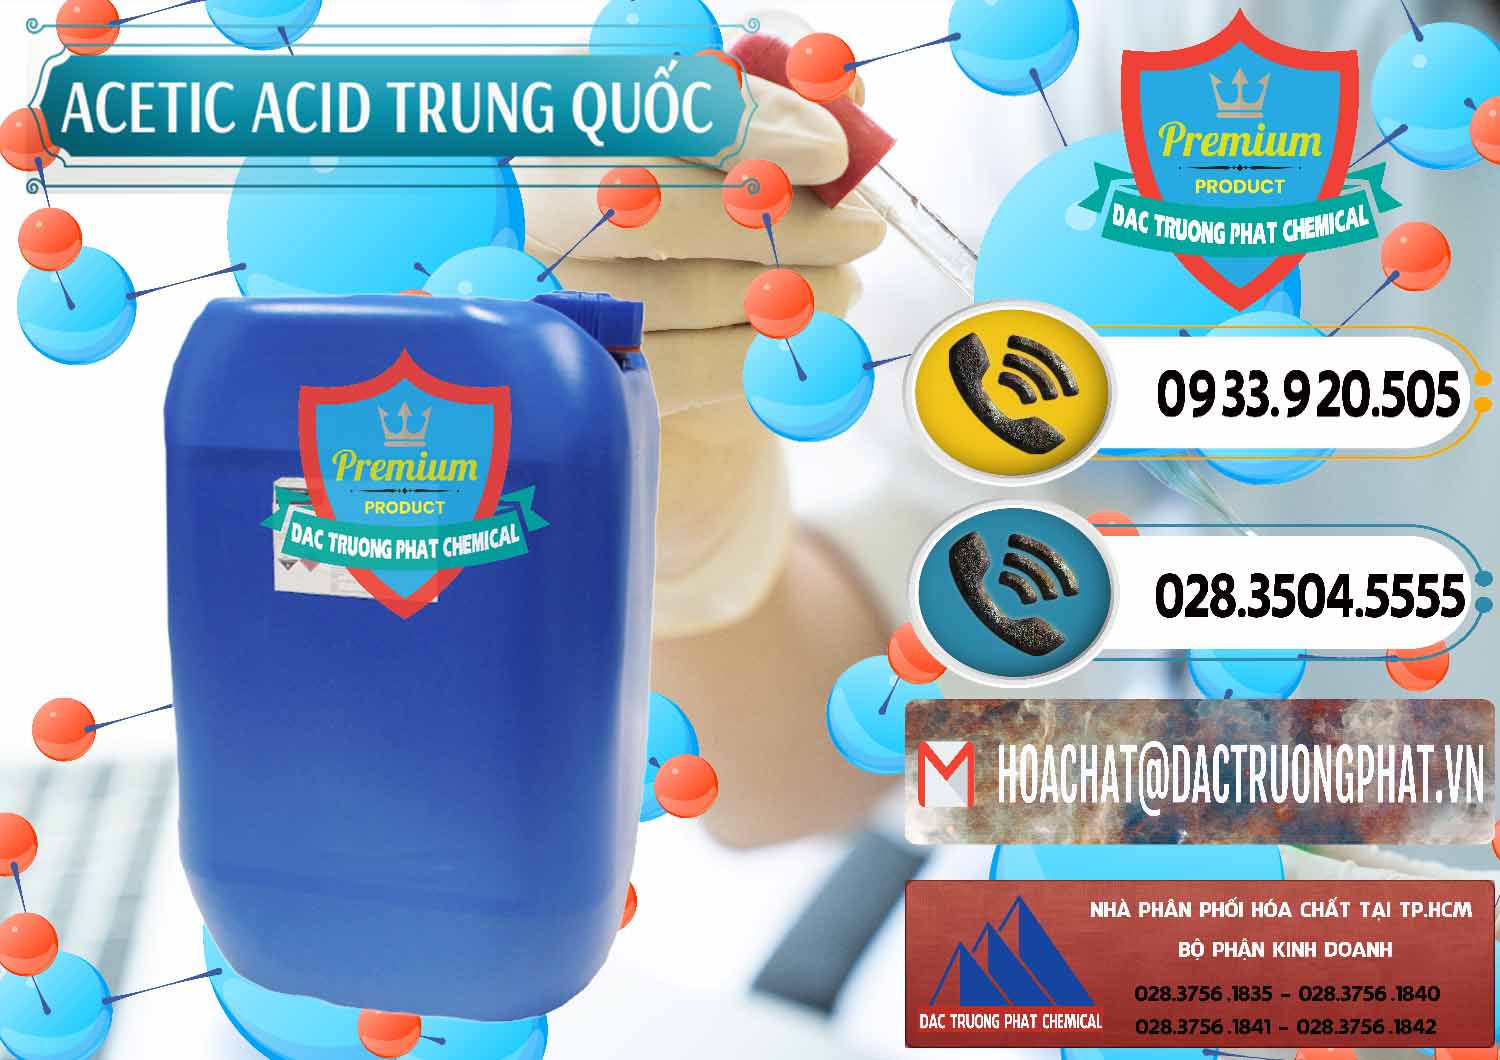 Công ty chuyên cung cấp ( bán ) Acetic Acid – Axit Acetic Trung Quốc China - 0358 - Đơn vị bán ( phân phối ) hóa chất tại TP.HCM - hoachatdetnhuom.vn